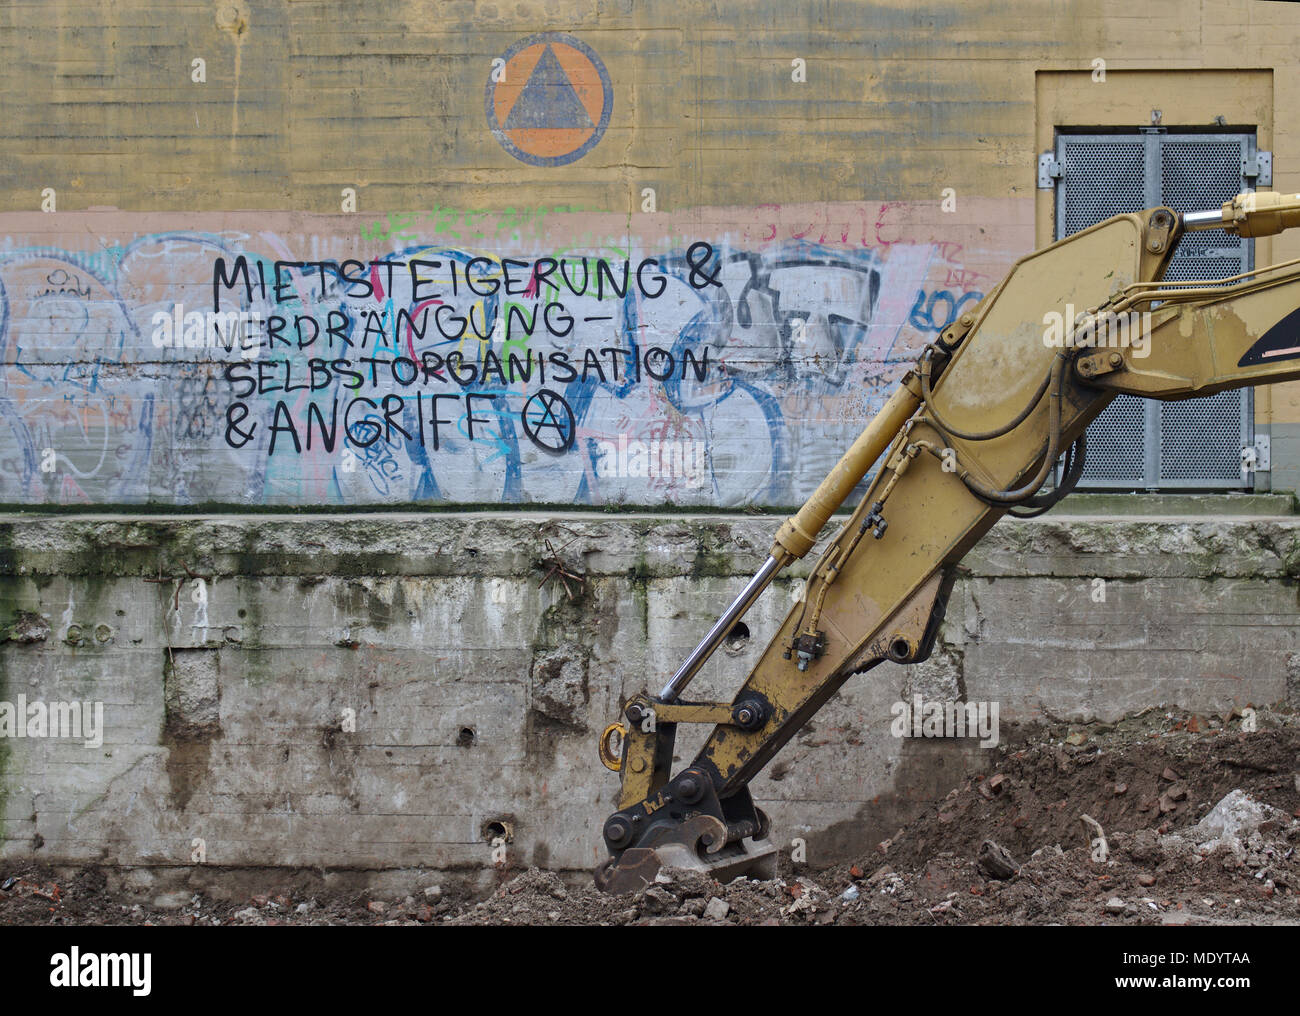 Bremen, Germania - Gennaio 29th, 2018 - edificio abbandonato a parete con graffiti dicendo "aumento del canone locativo & espulsione - auto-organizzazione & attack' in tedesco Foto Stock